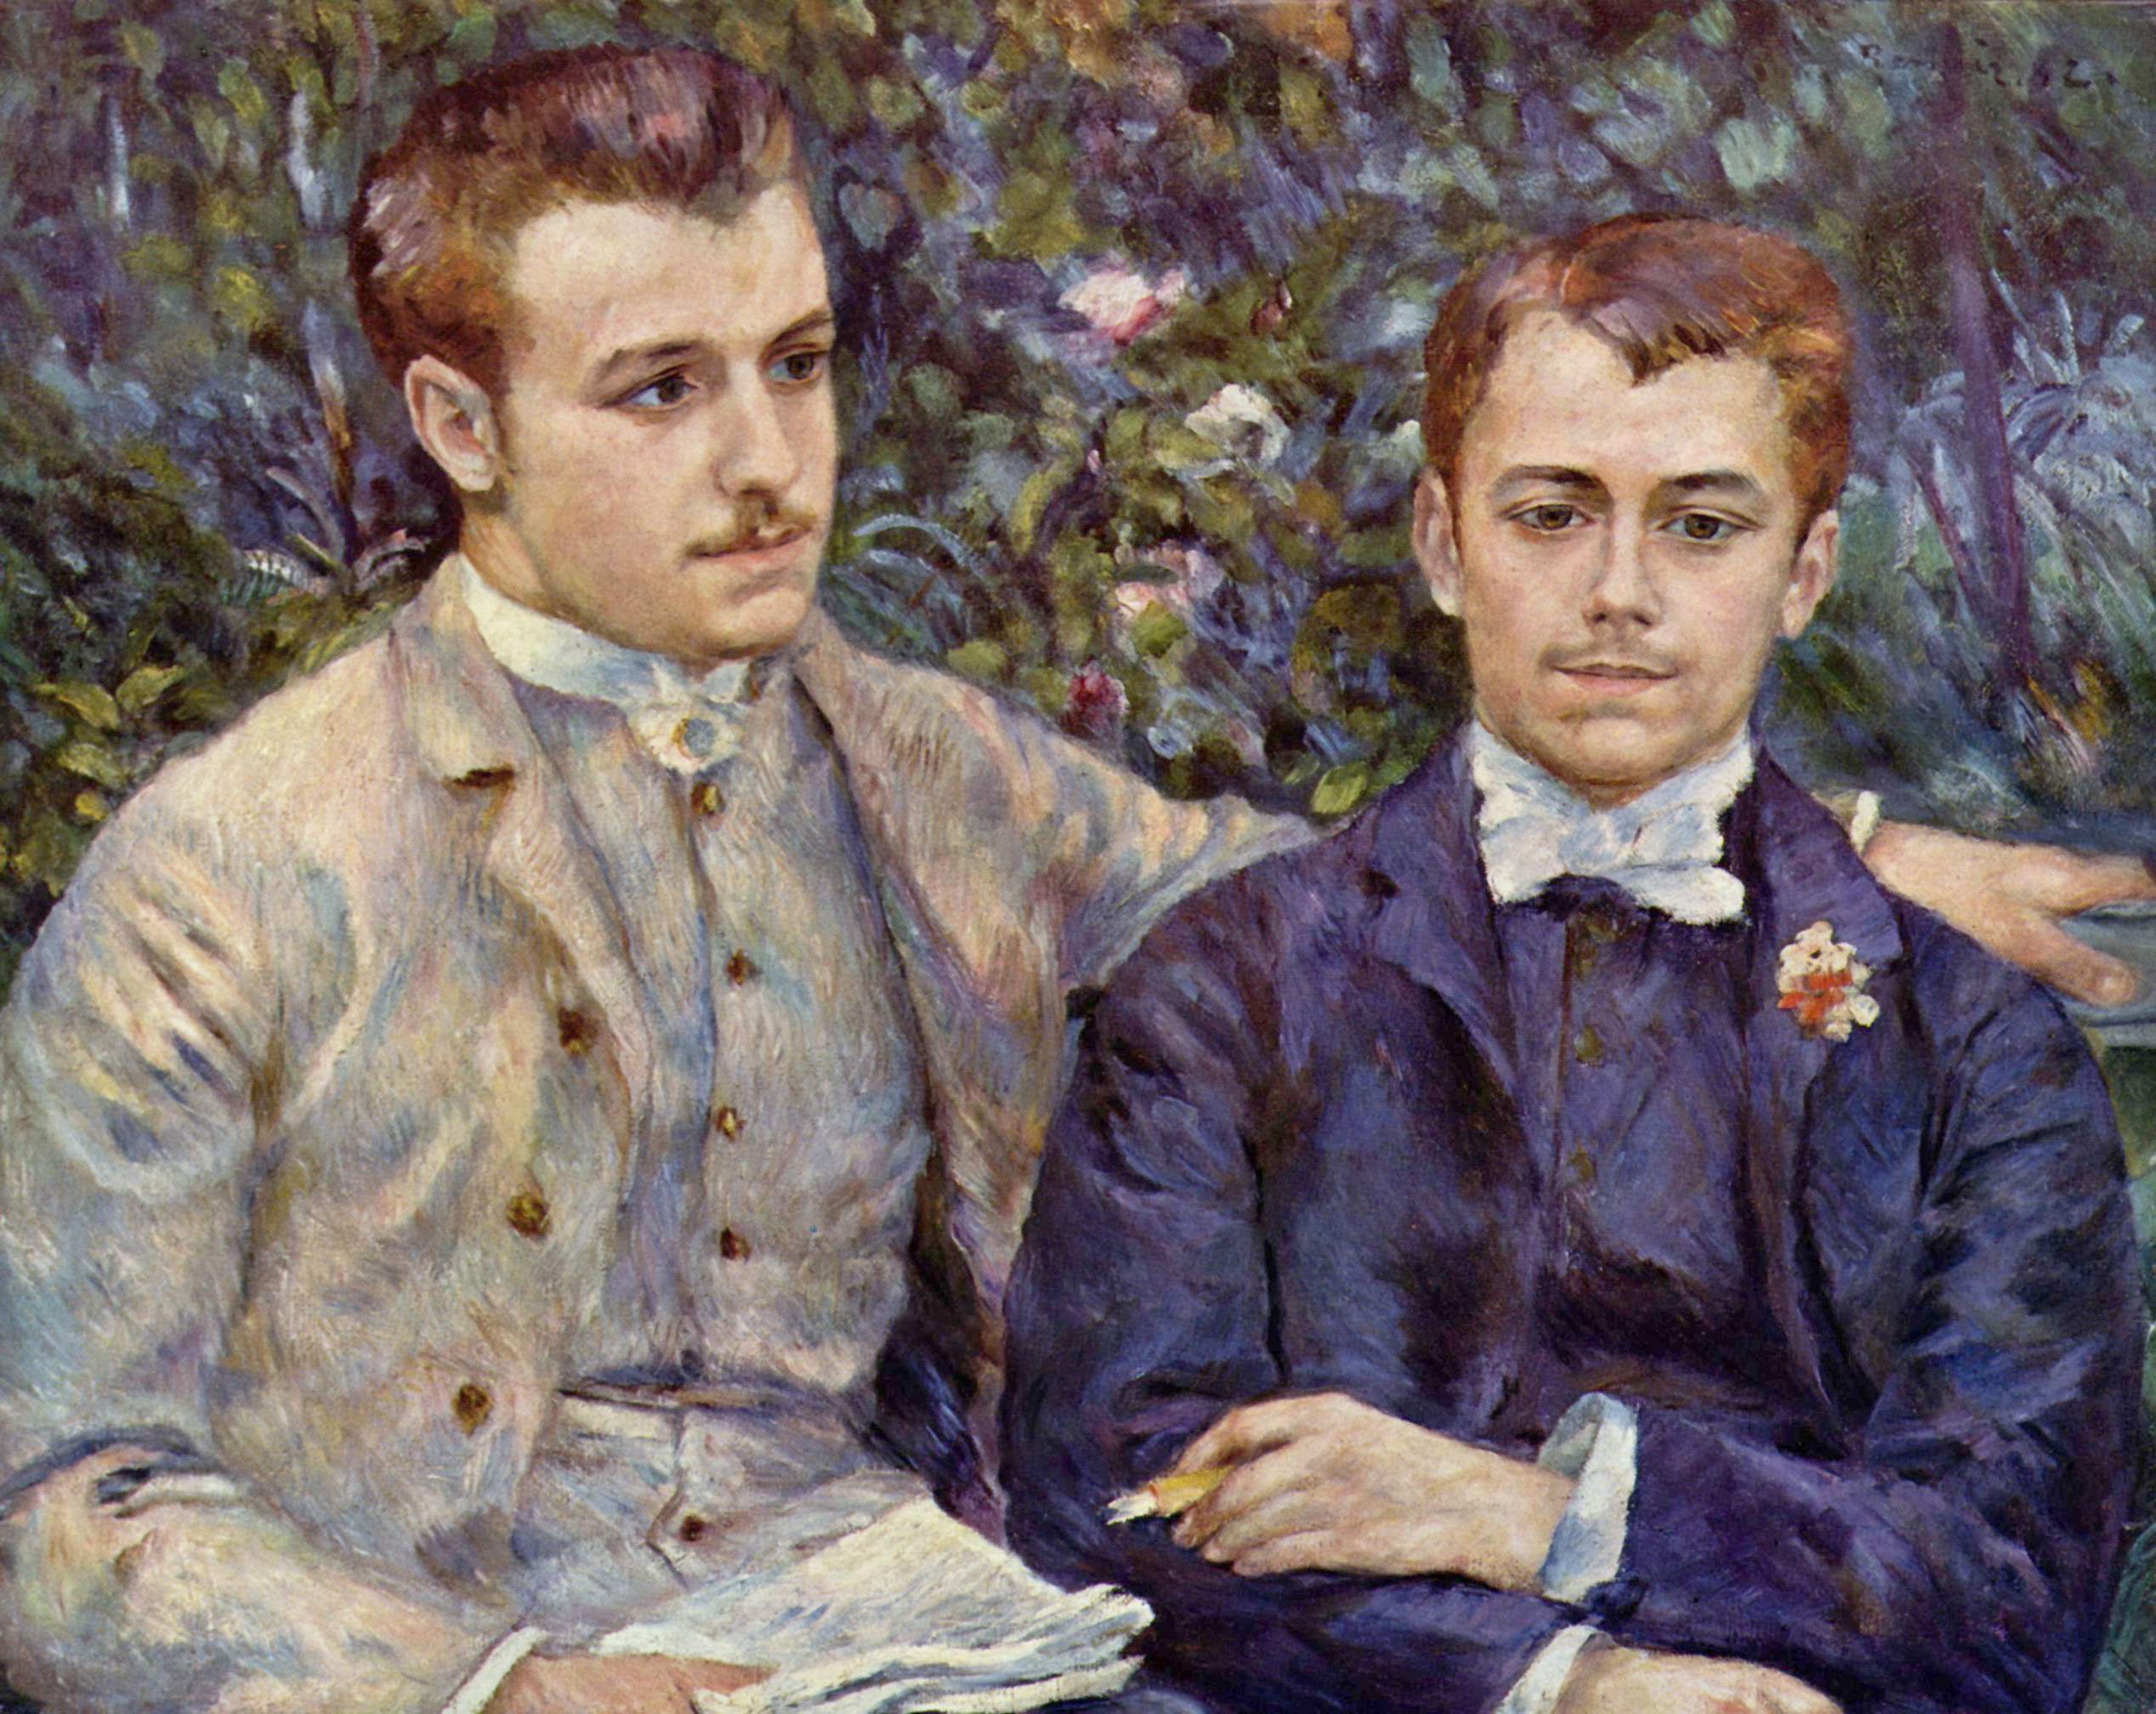 查爾斯及喬治·杜蘭-魯埃爾的校ㄒㄧㄤ by Pierre-Auguste Renoir - 1882 - 65 x 81 公分 